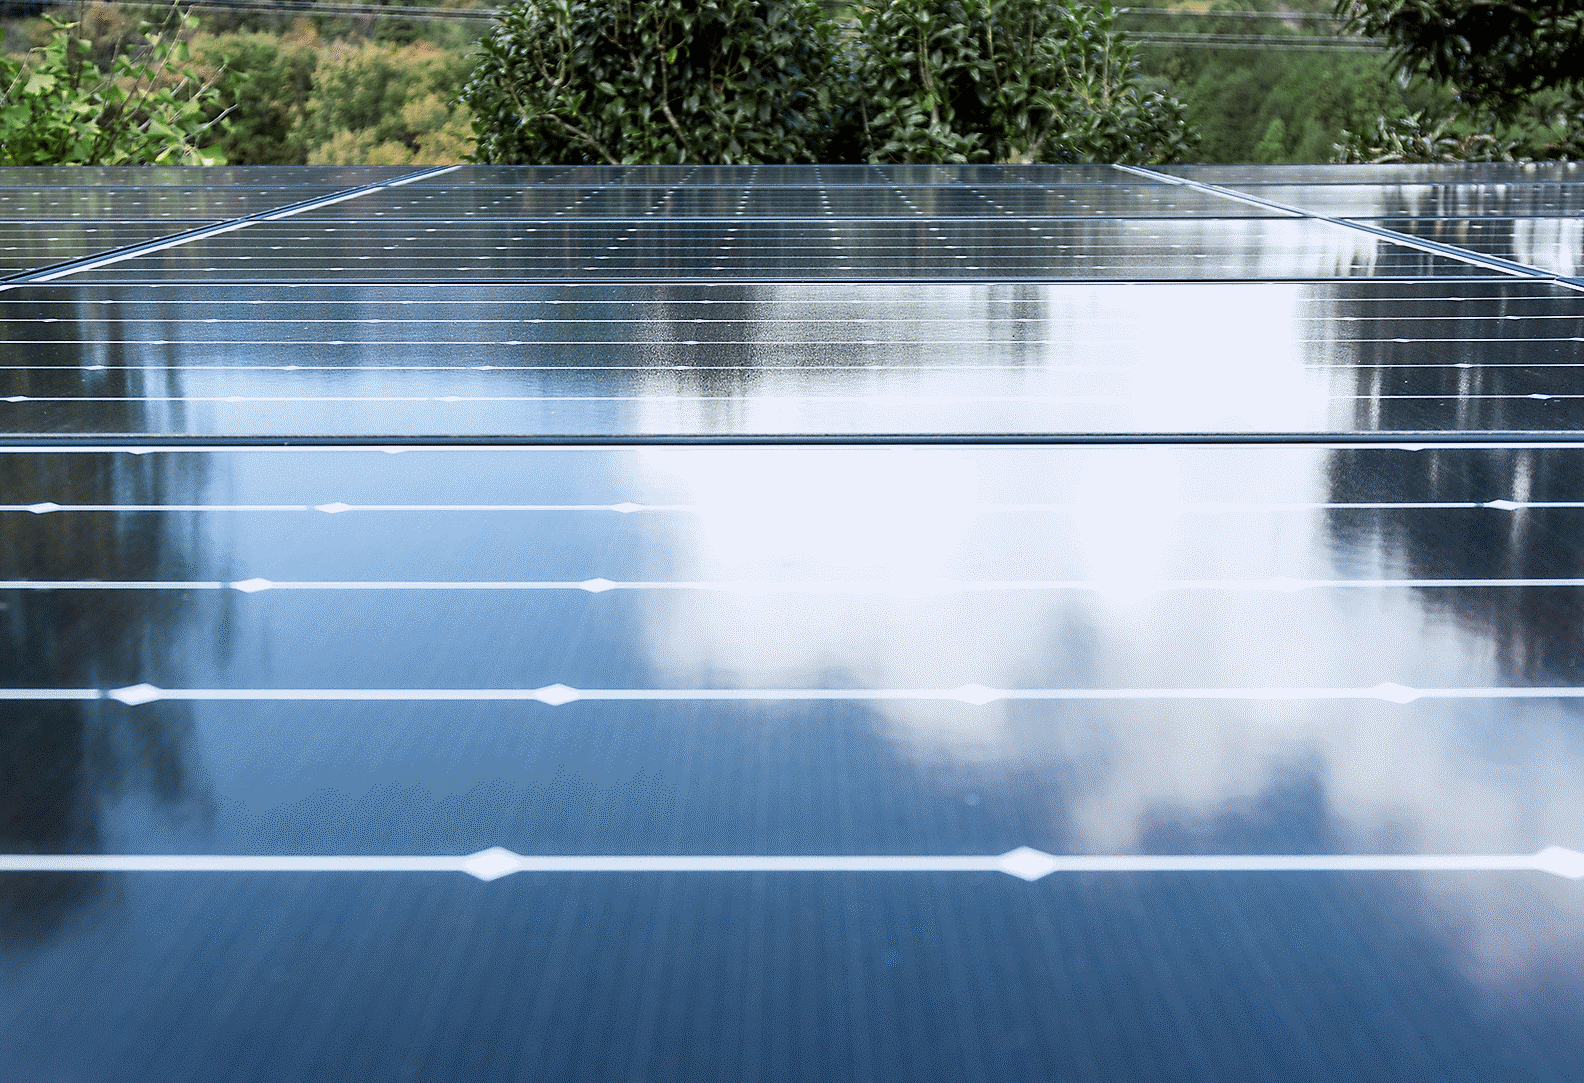 Photo du toit d'une usine couvert de panneaux solaires